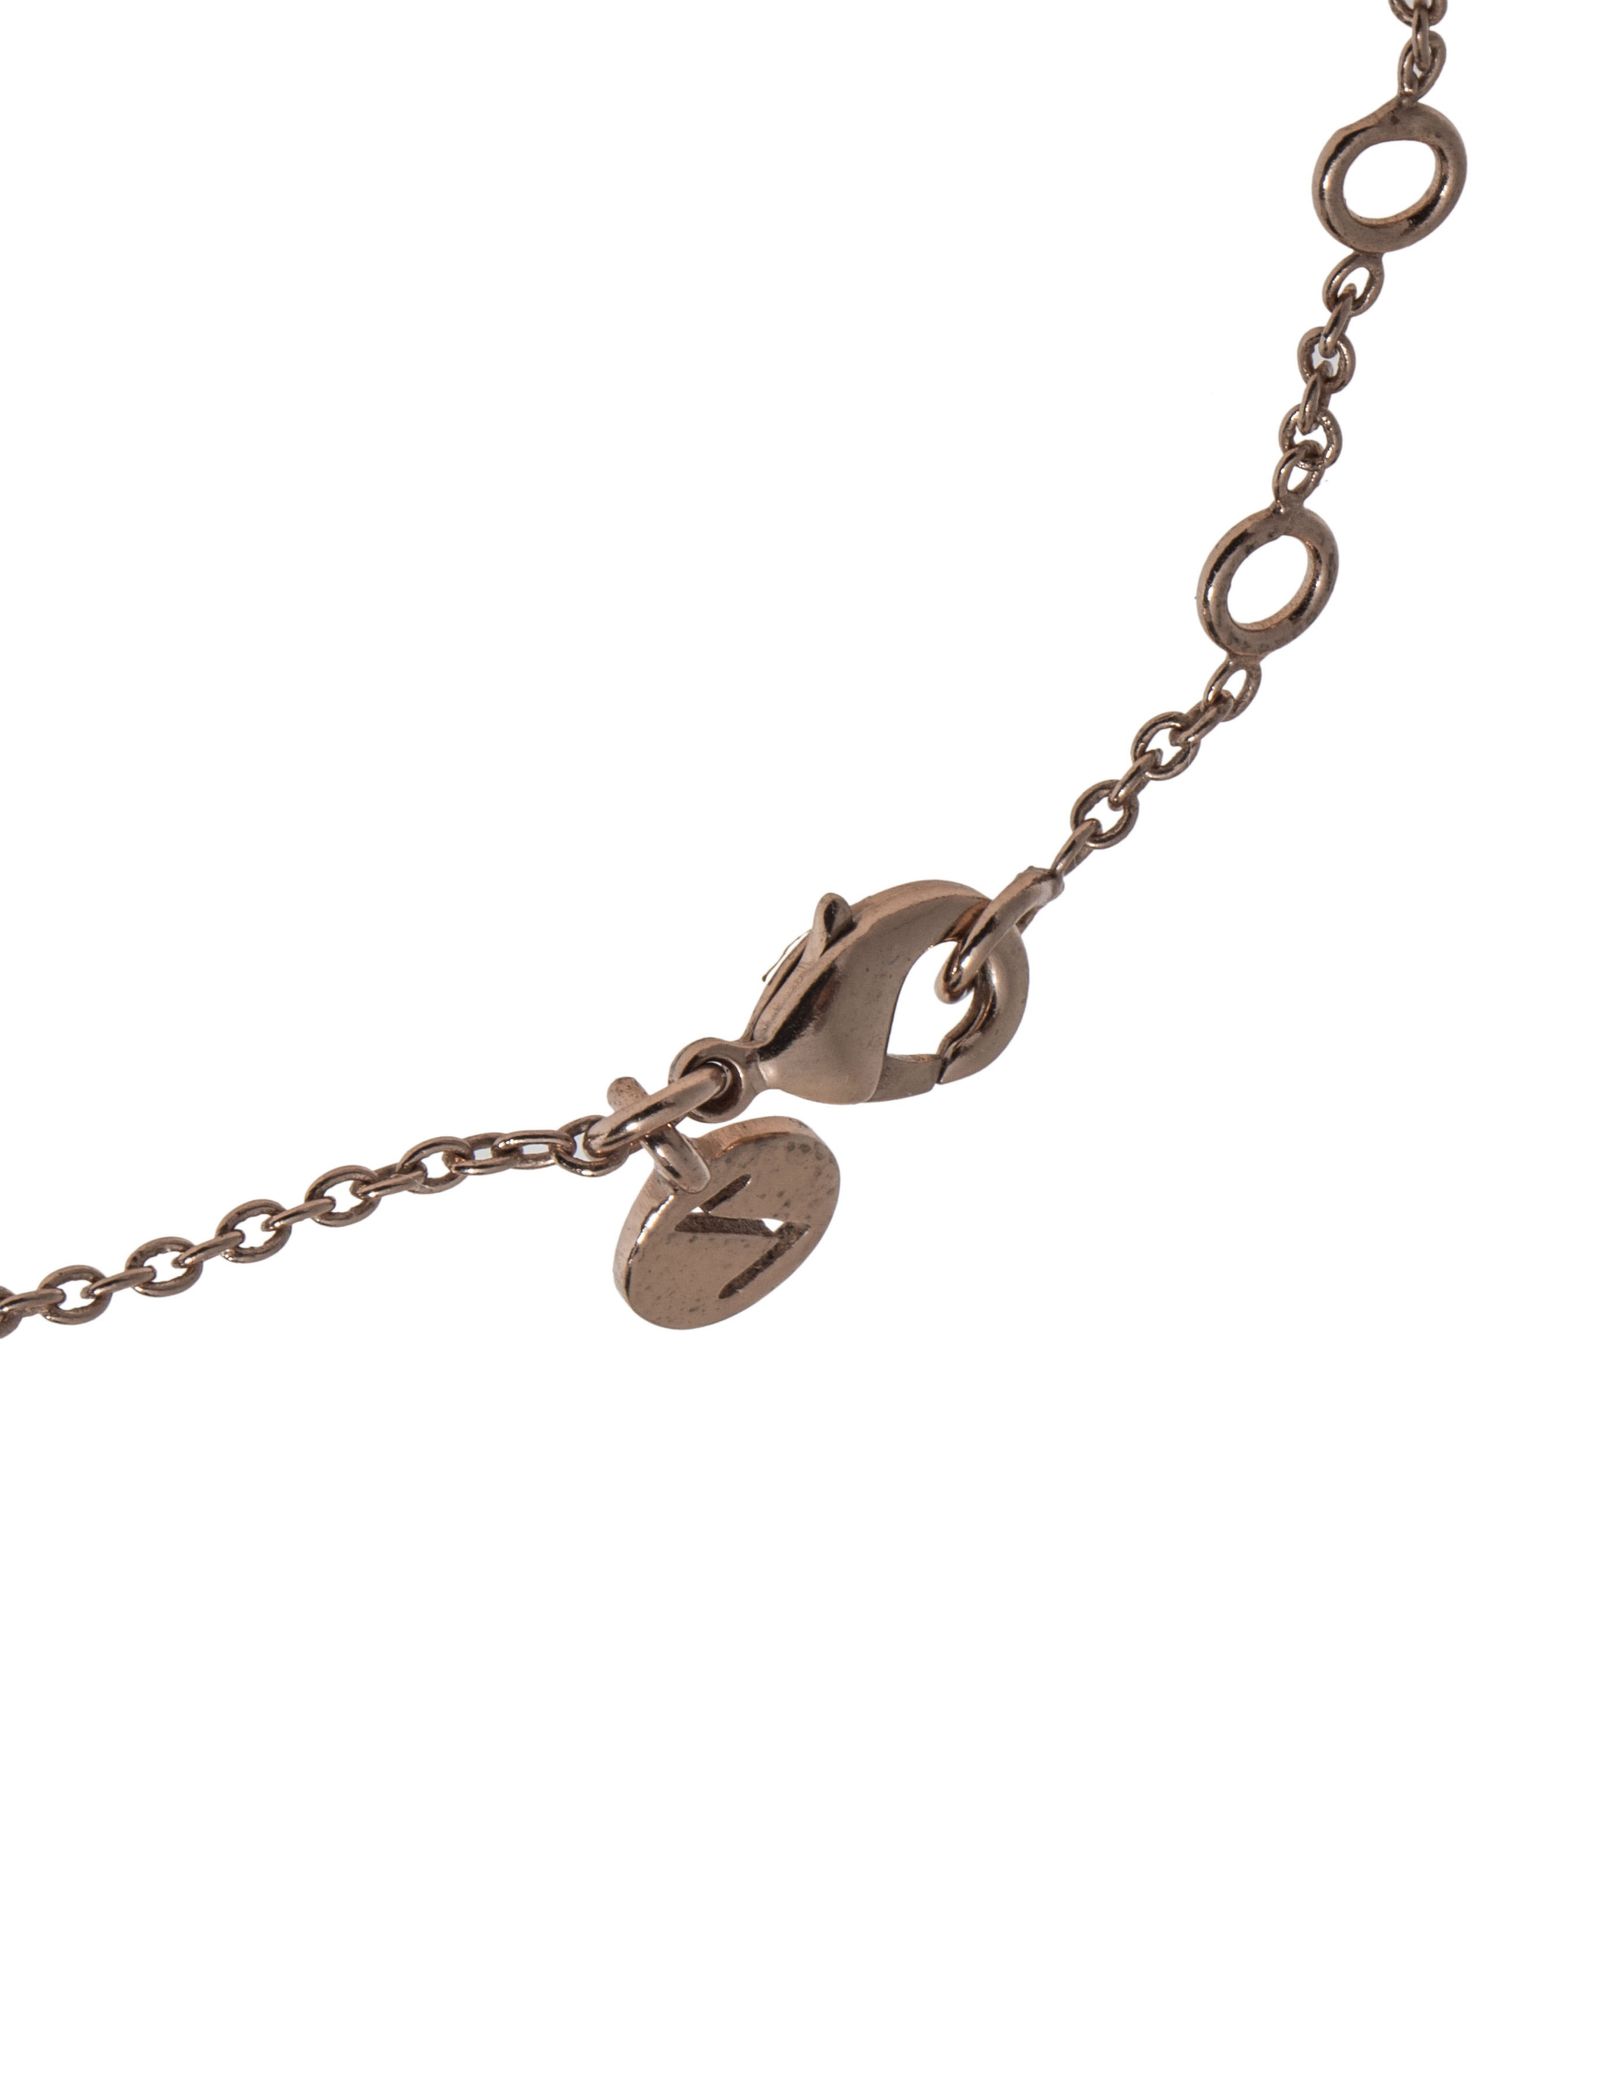 دستبند زنجیری زنانه - اکسسورایز تک سایز - رزگلد - 4